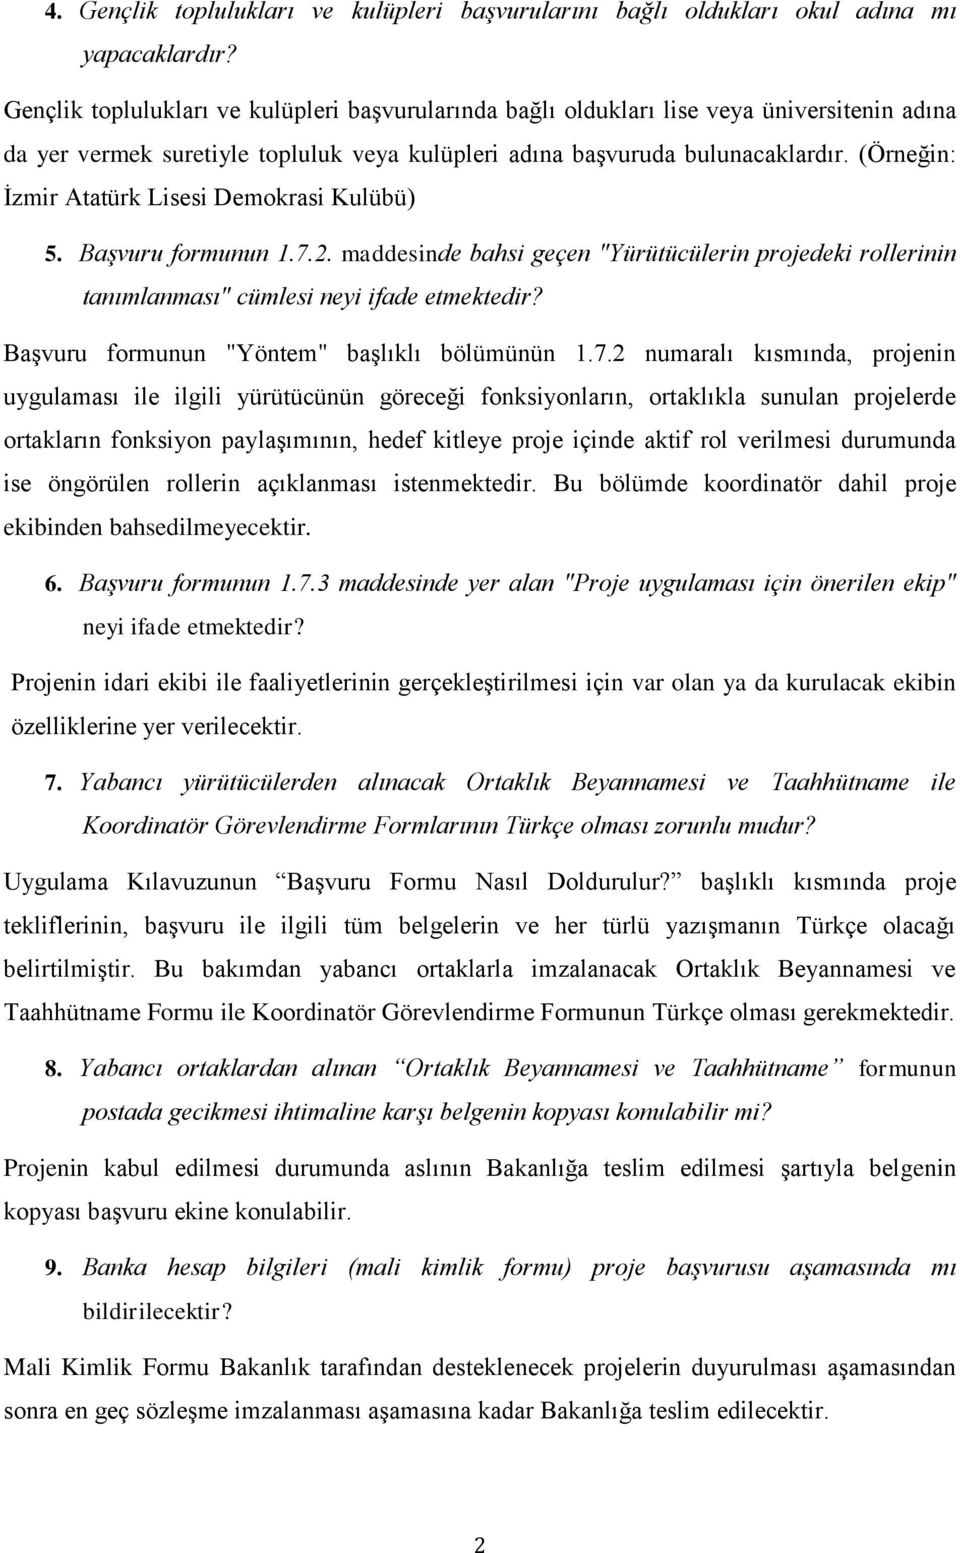 (Örneğin: İzmir Atatürk Lisesi Demokrasi Kulübü) 5. Başvuru formunun 1.7.2. maddesinde bahsi geçen "Yürütücülerin projedeki rollerinin tanımlanması" cümlesi neyi ifade etmektedir?